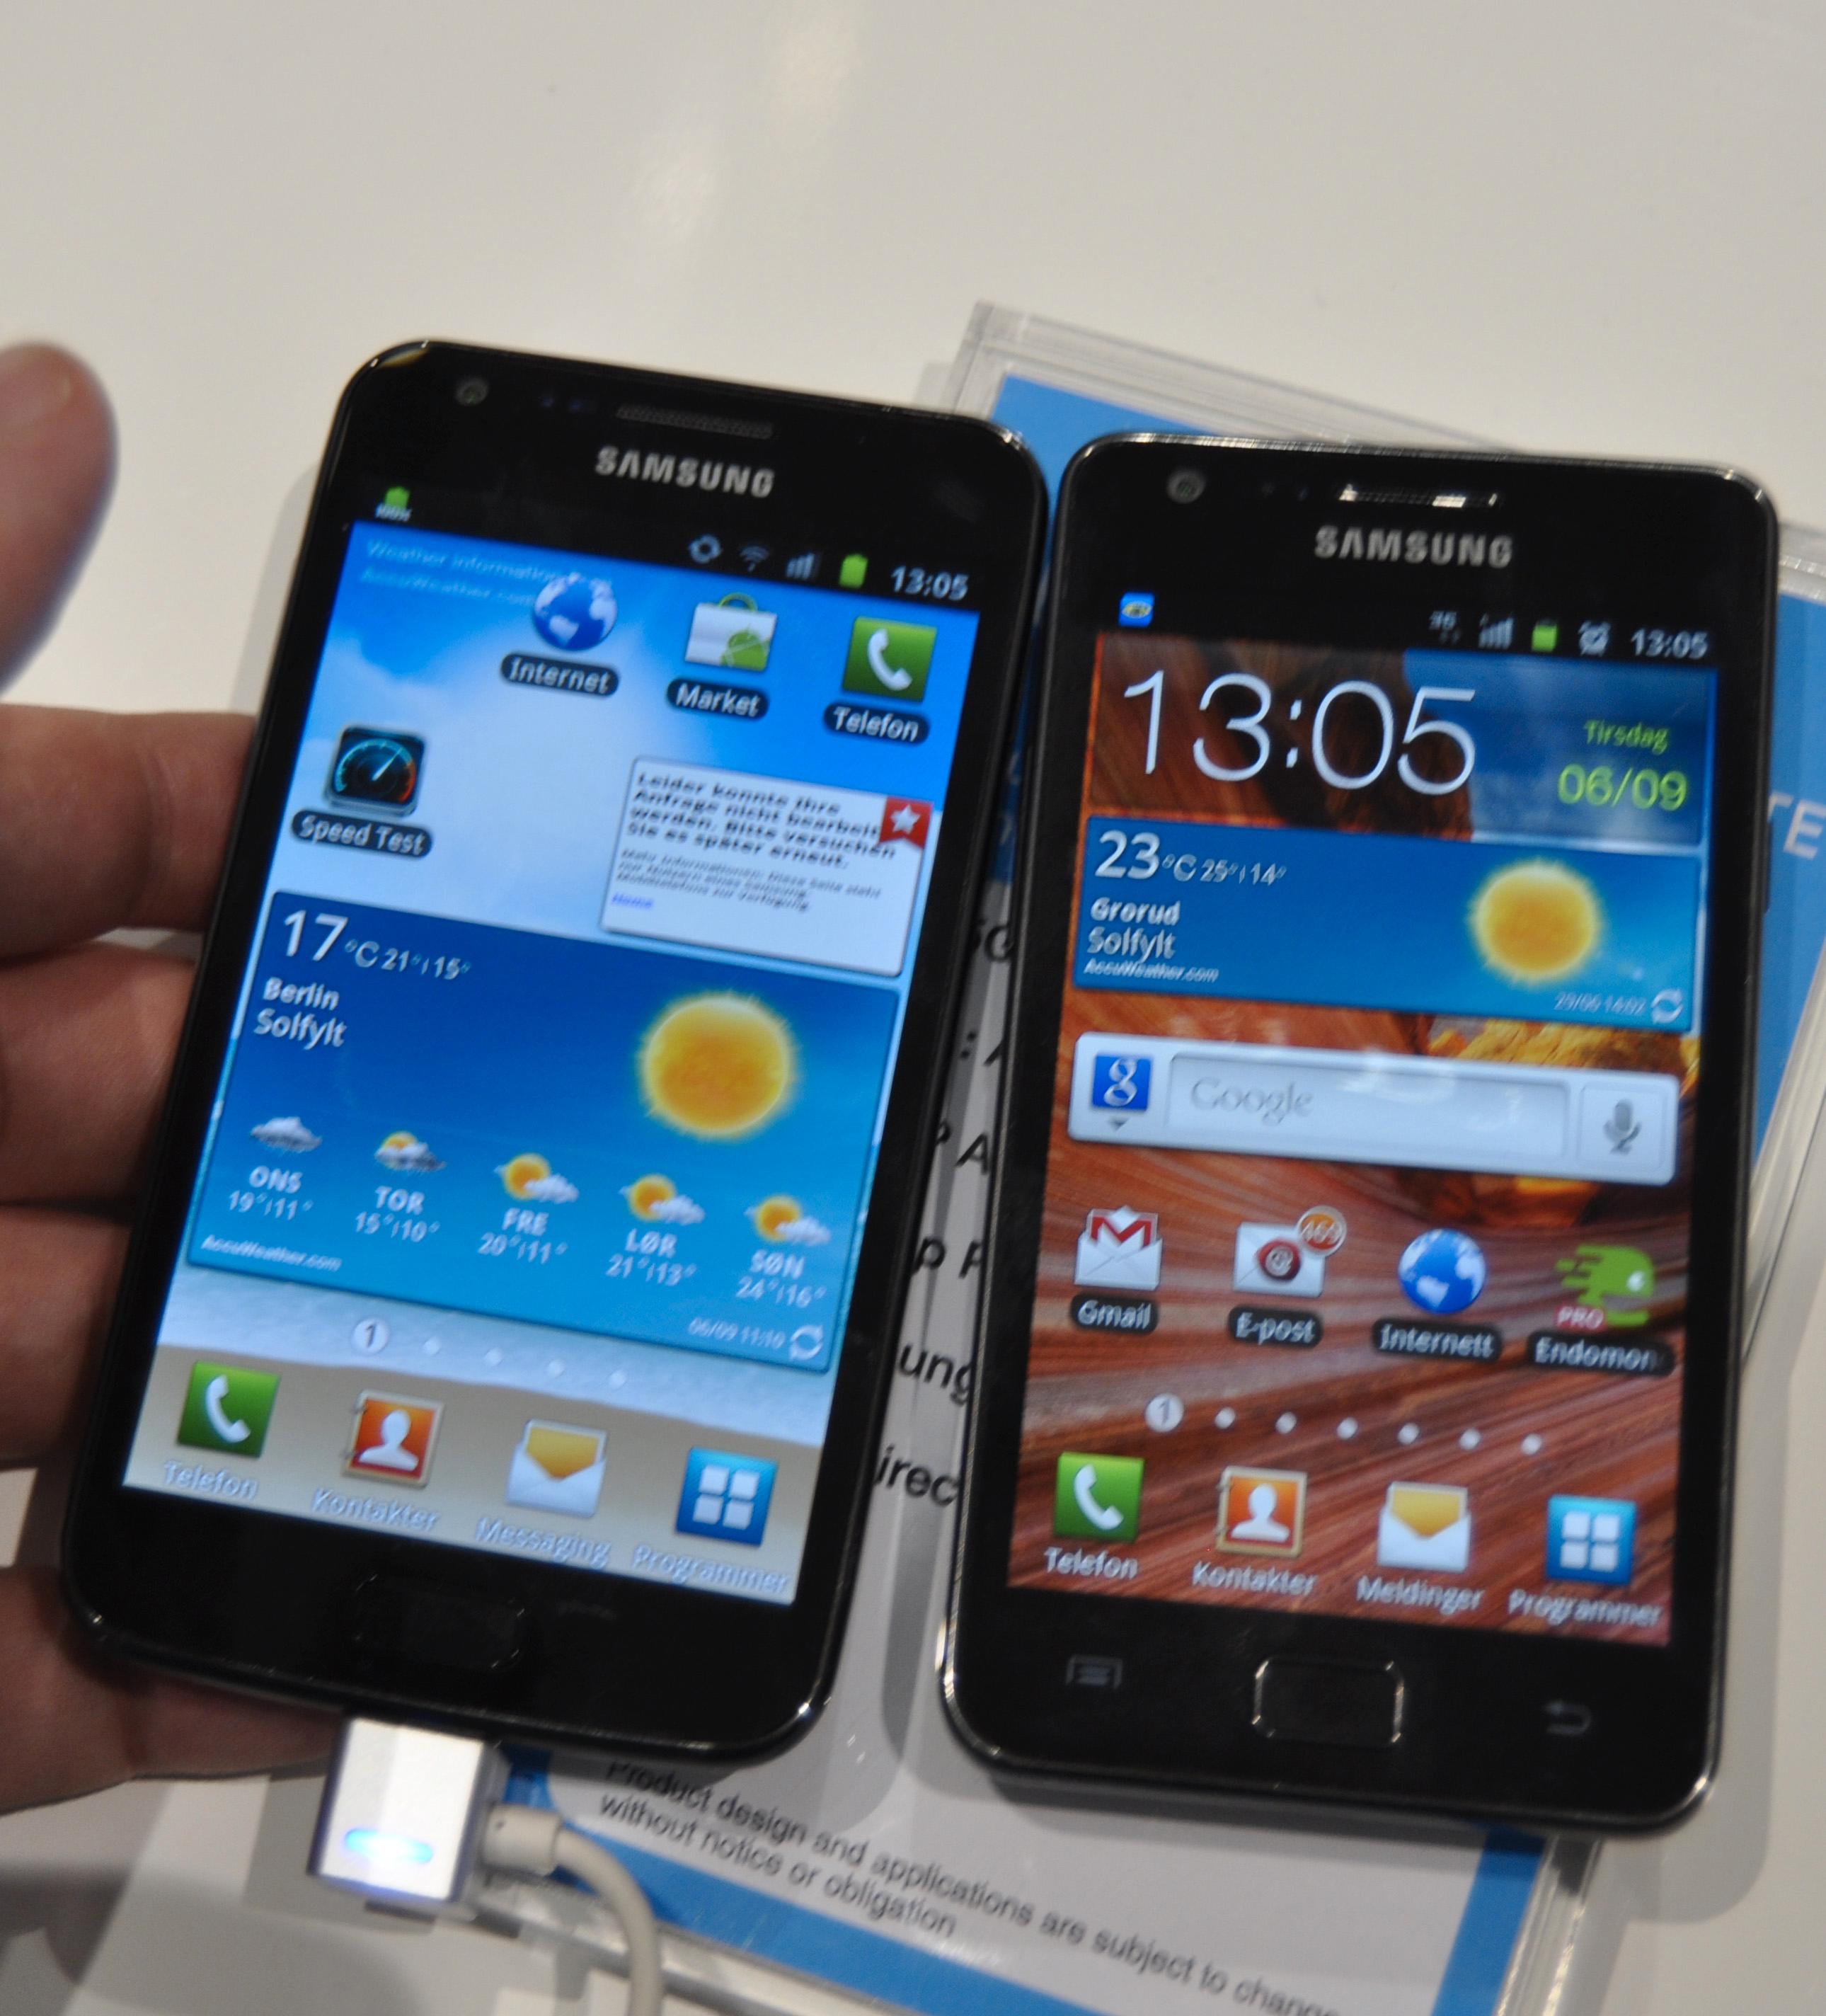 Galaxy S II LTE og Galaxy S II ved siden av hverandre. Den oppdaterte modellen til venstre.